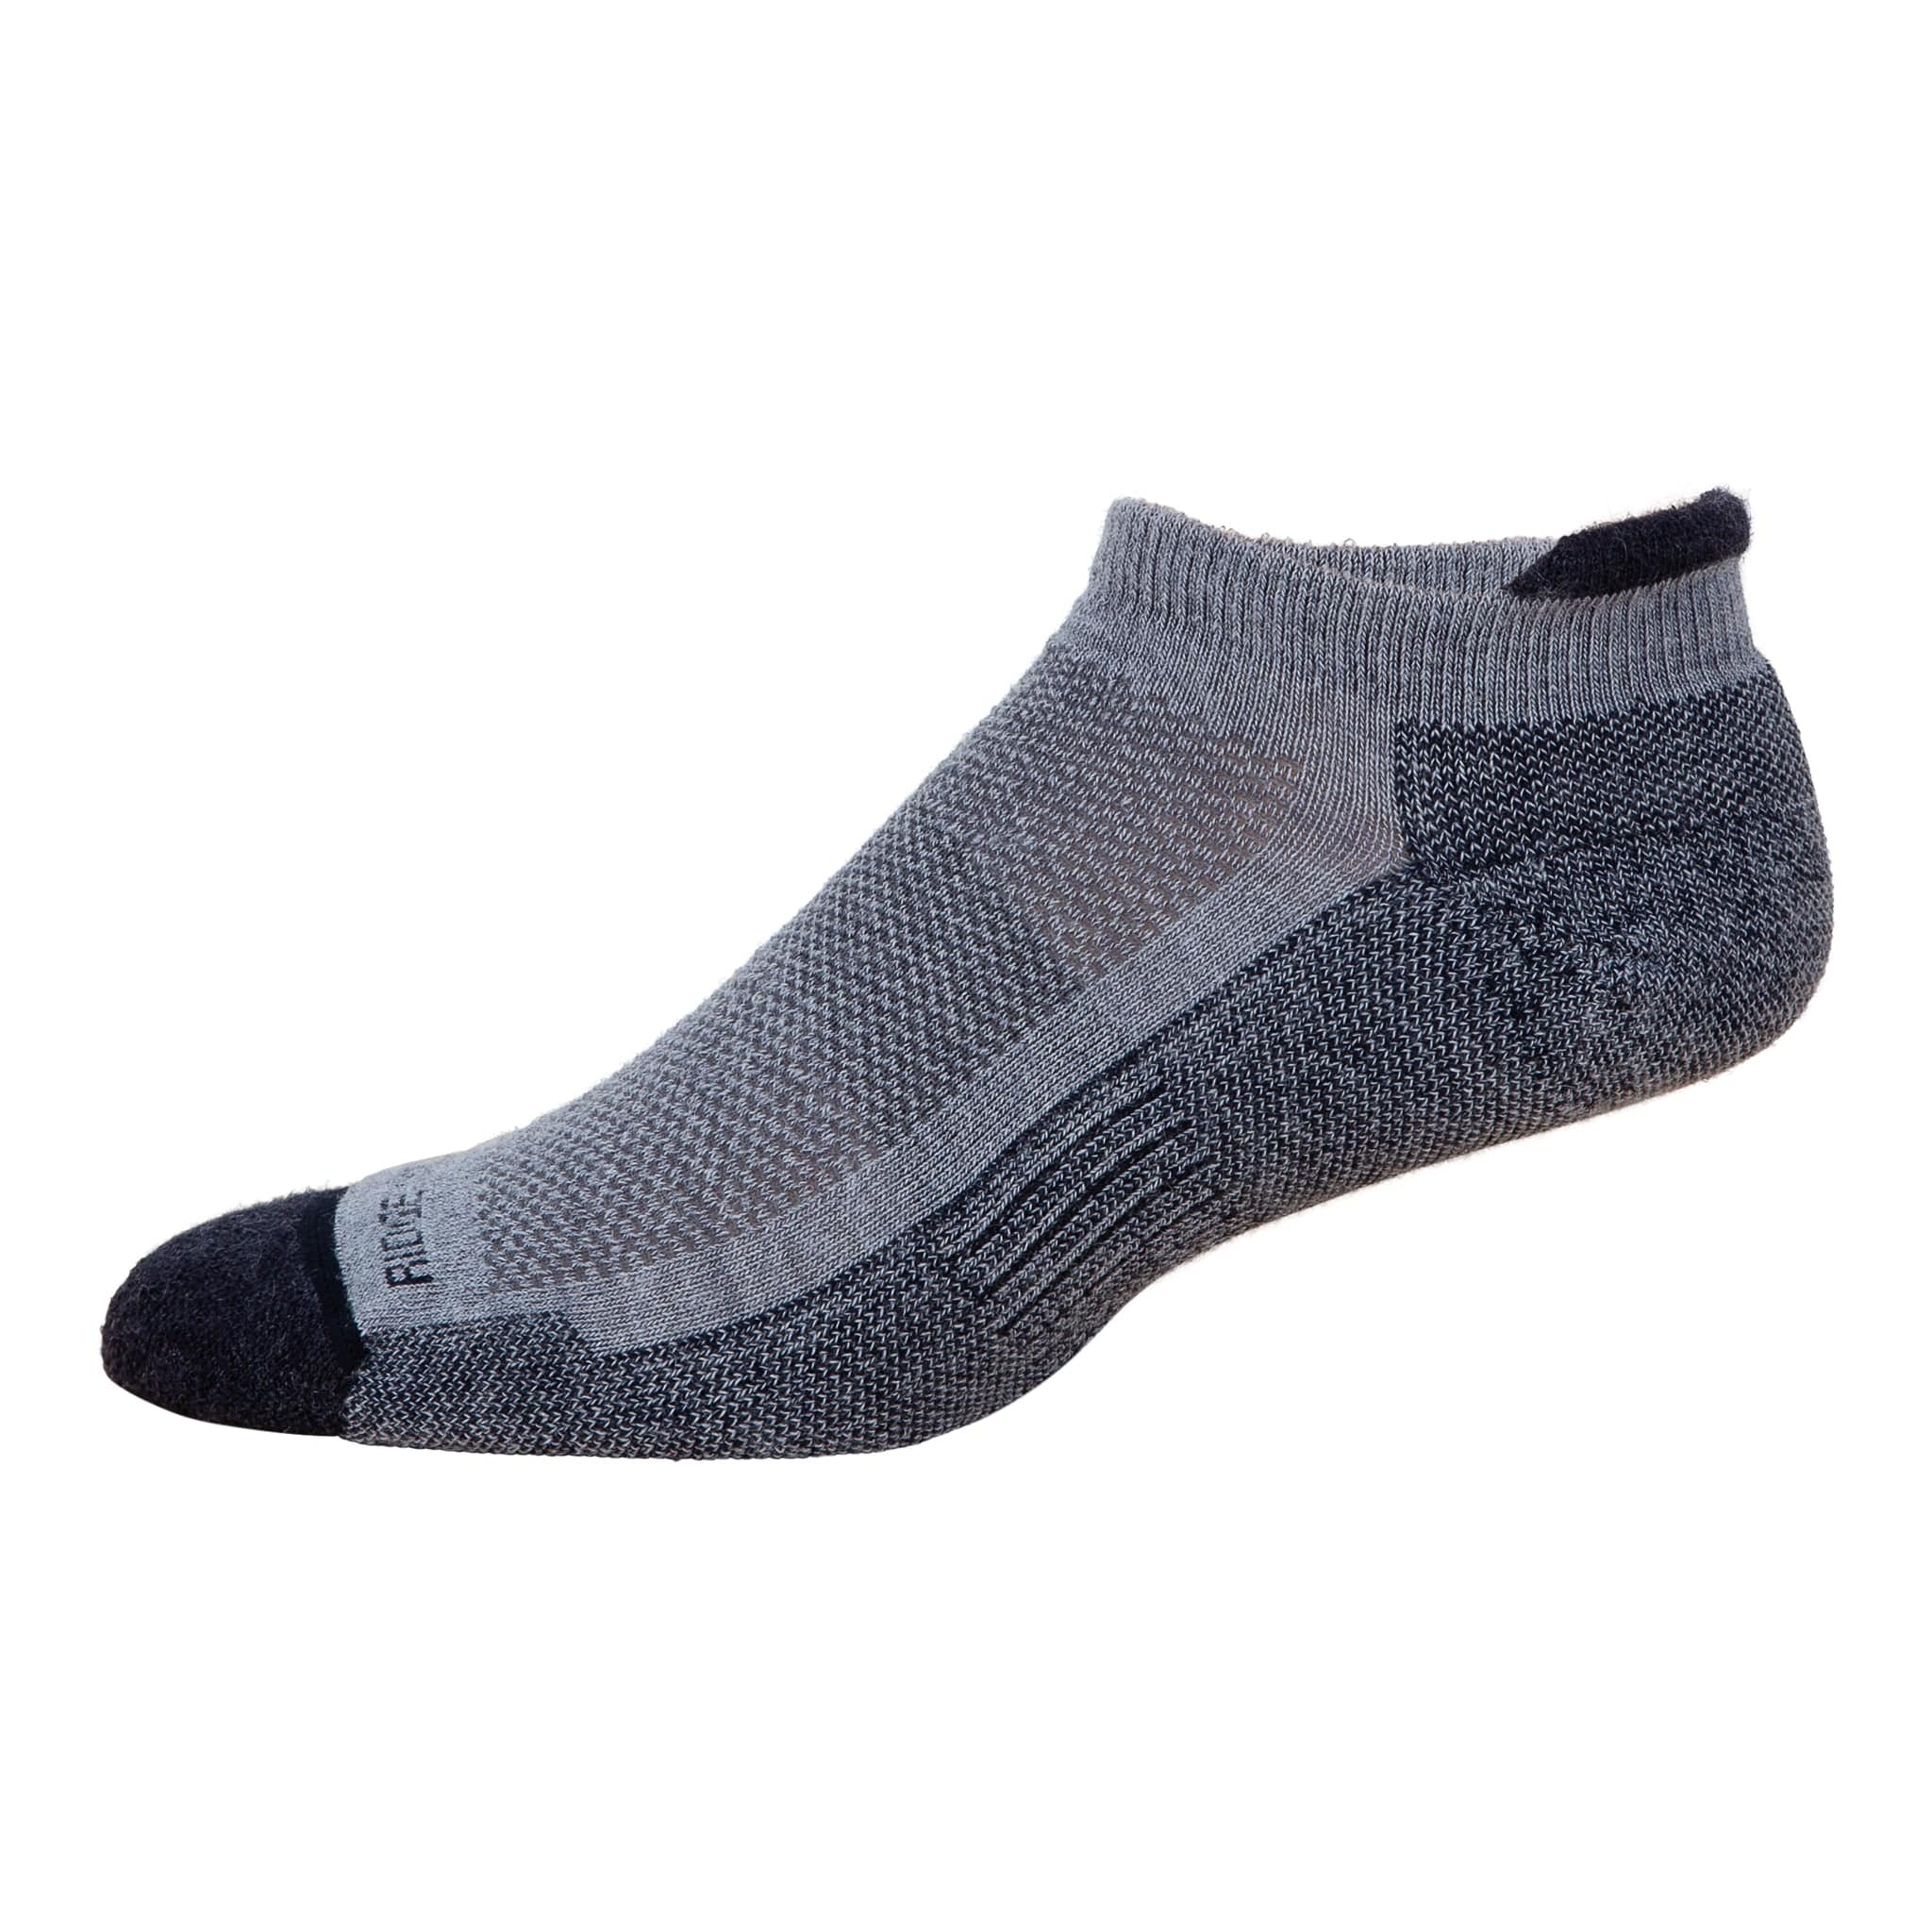 Rock Creek Merino Wool Low Cut Socks